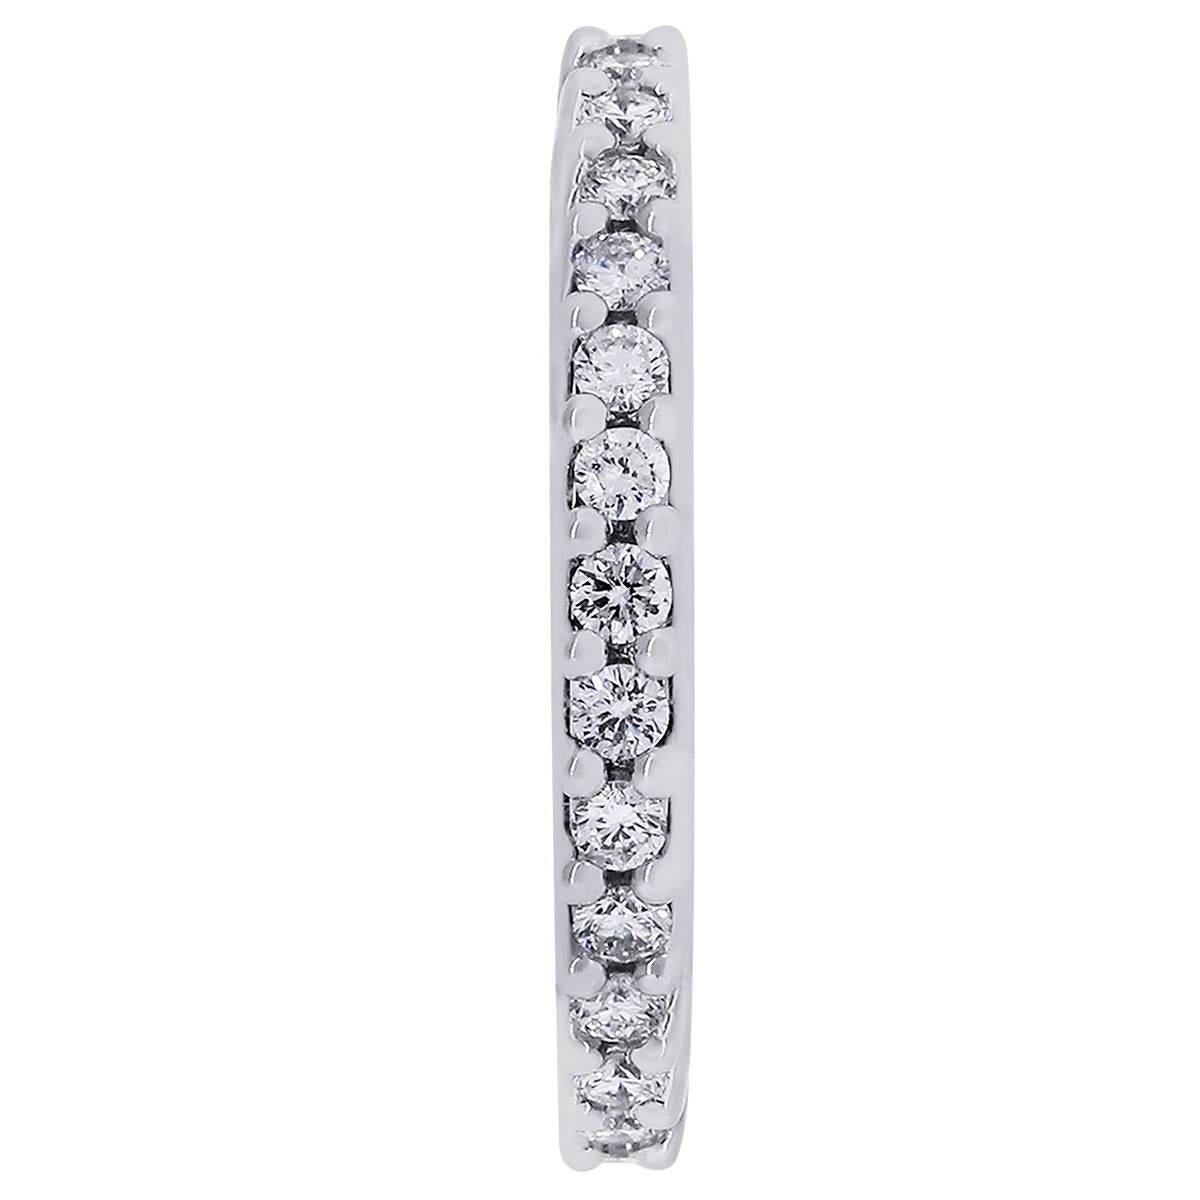 Matériau : or blanc 14k
Détails des diamants : Environ 1,05ctw de diamants ronds brillants. Les diamants sont de couleur G et de pureté SI.
Taille : 7 flexible jusqu'à la taille 8 (ne peut pas être ajustée)
Mesures : 0.95